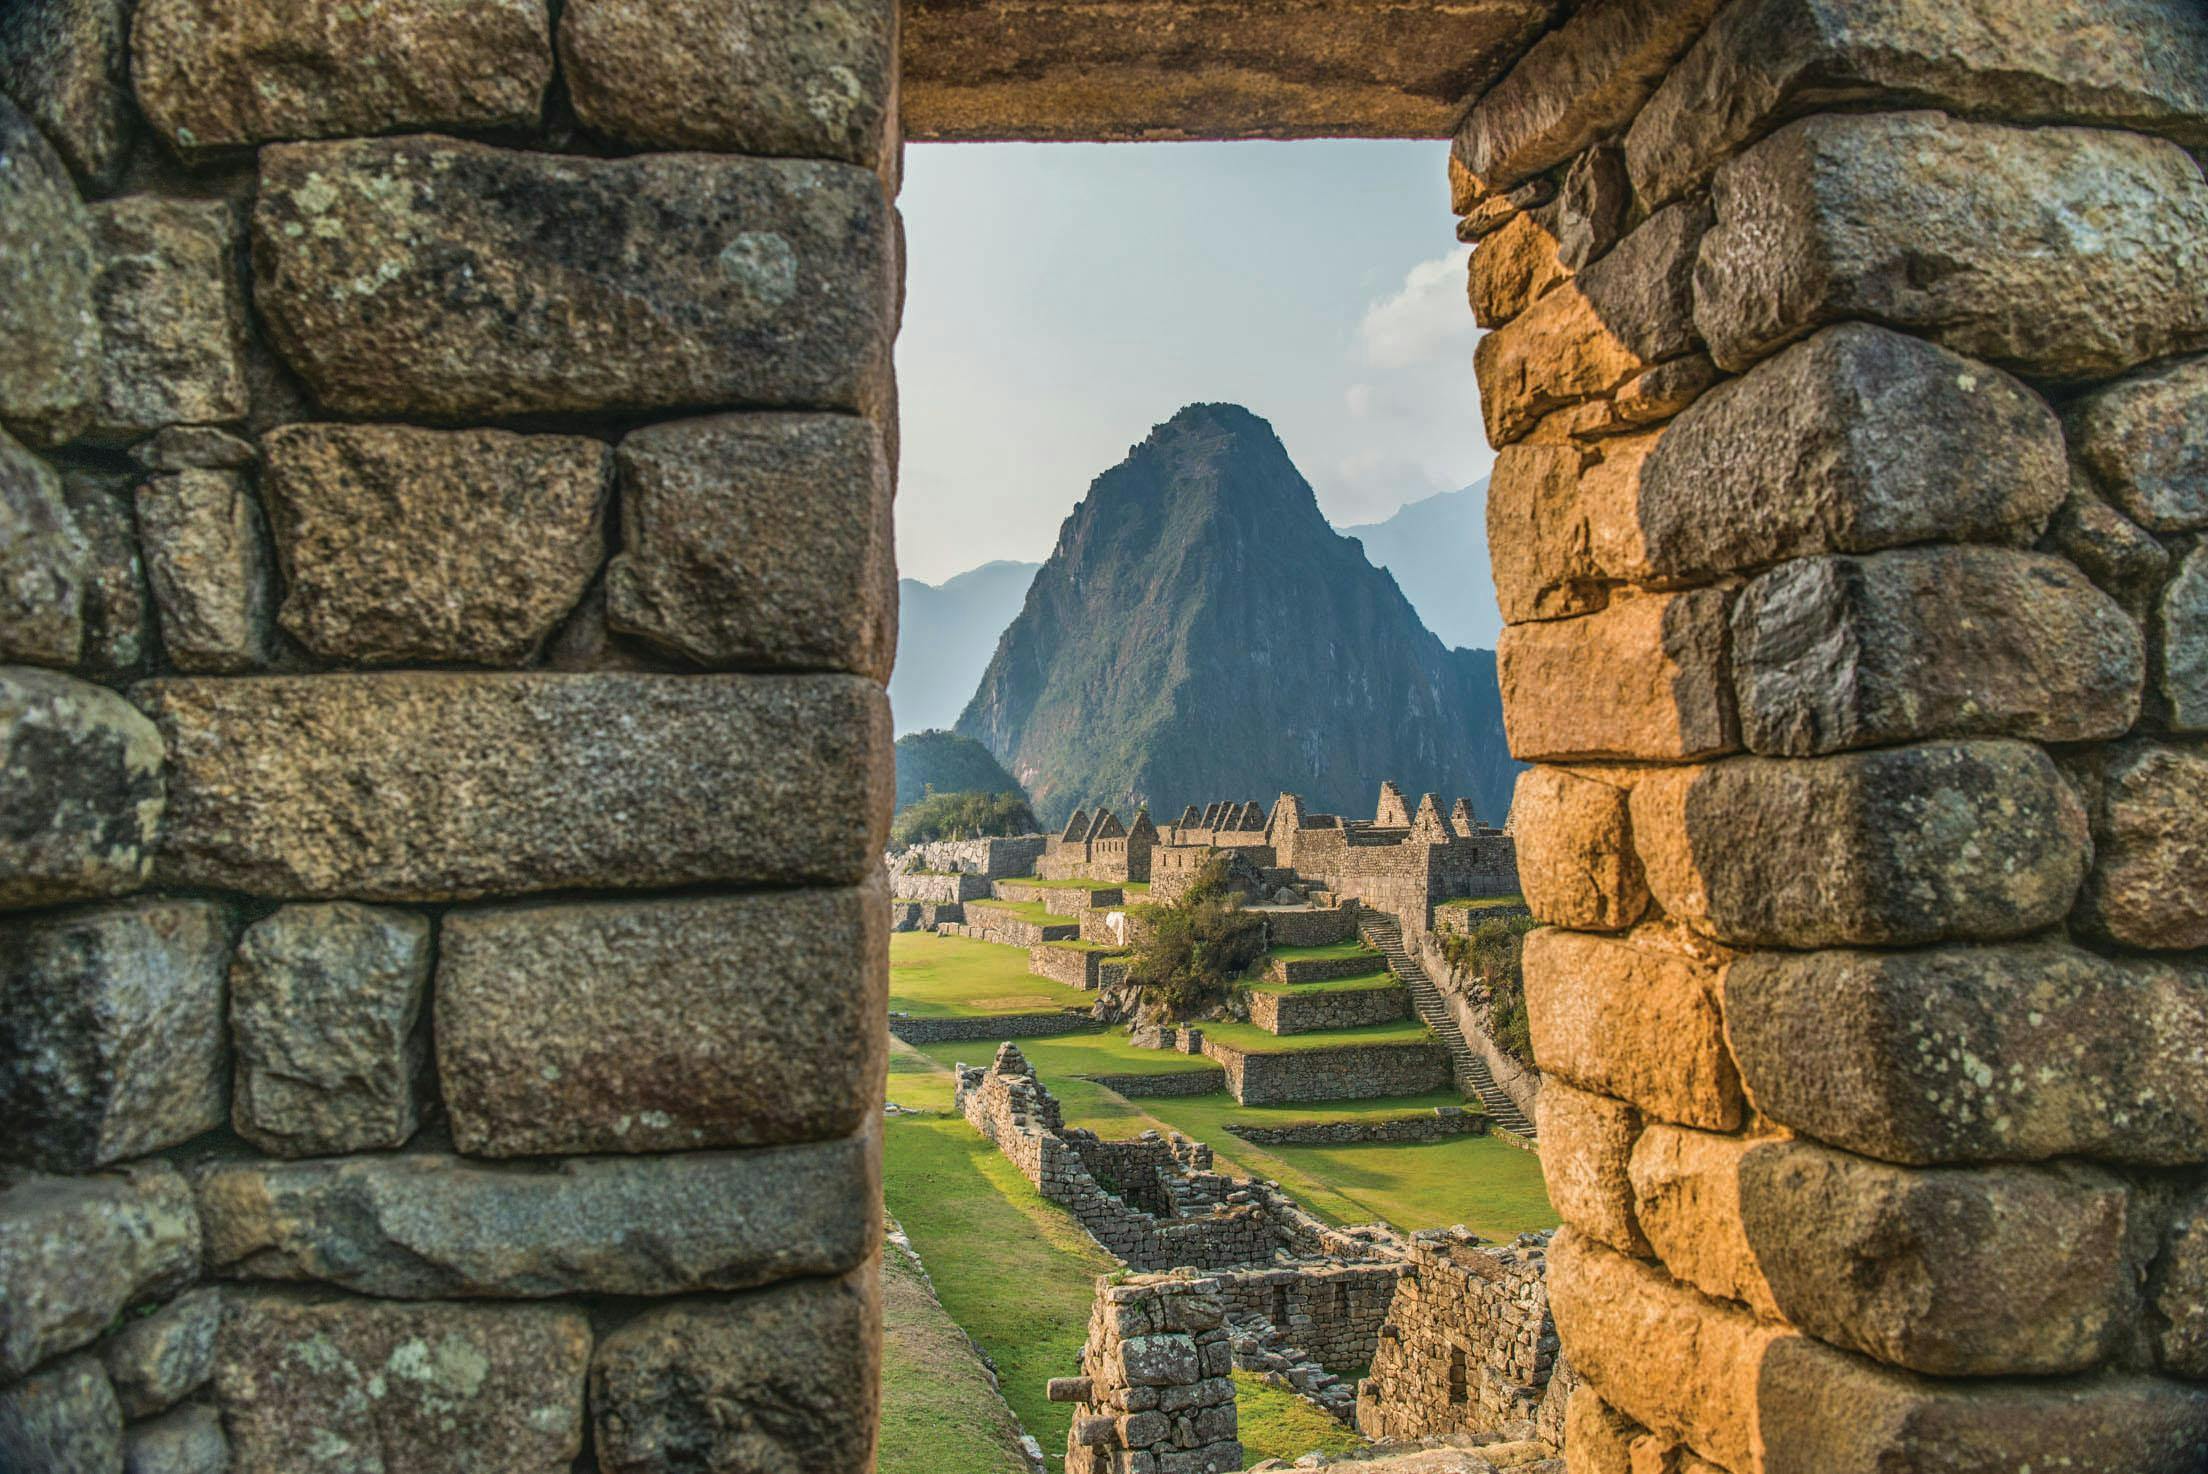 View of Machu Picchu, Peru.